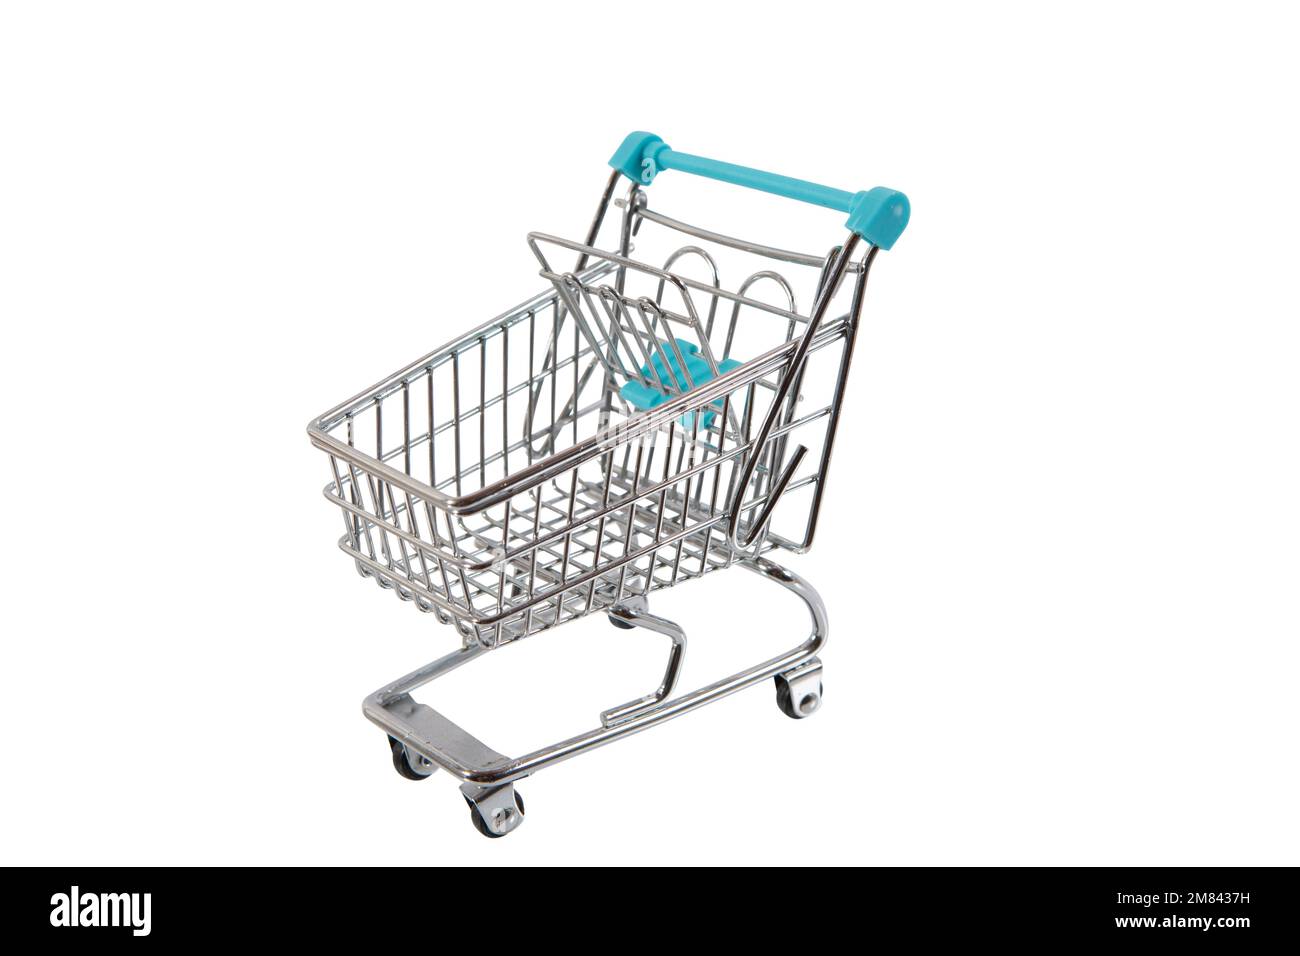 Modell eines Einkaufswagen wie im Supermarkt, hier mit Euroscheinen oder Kleingeld gefüllt. Symbolbild, freigestellt. Banque D'Images